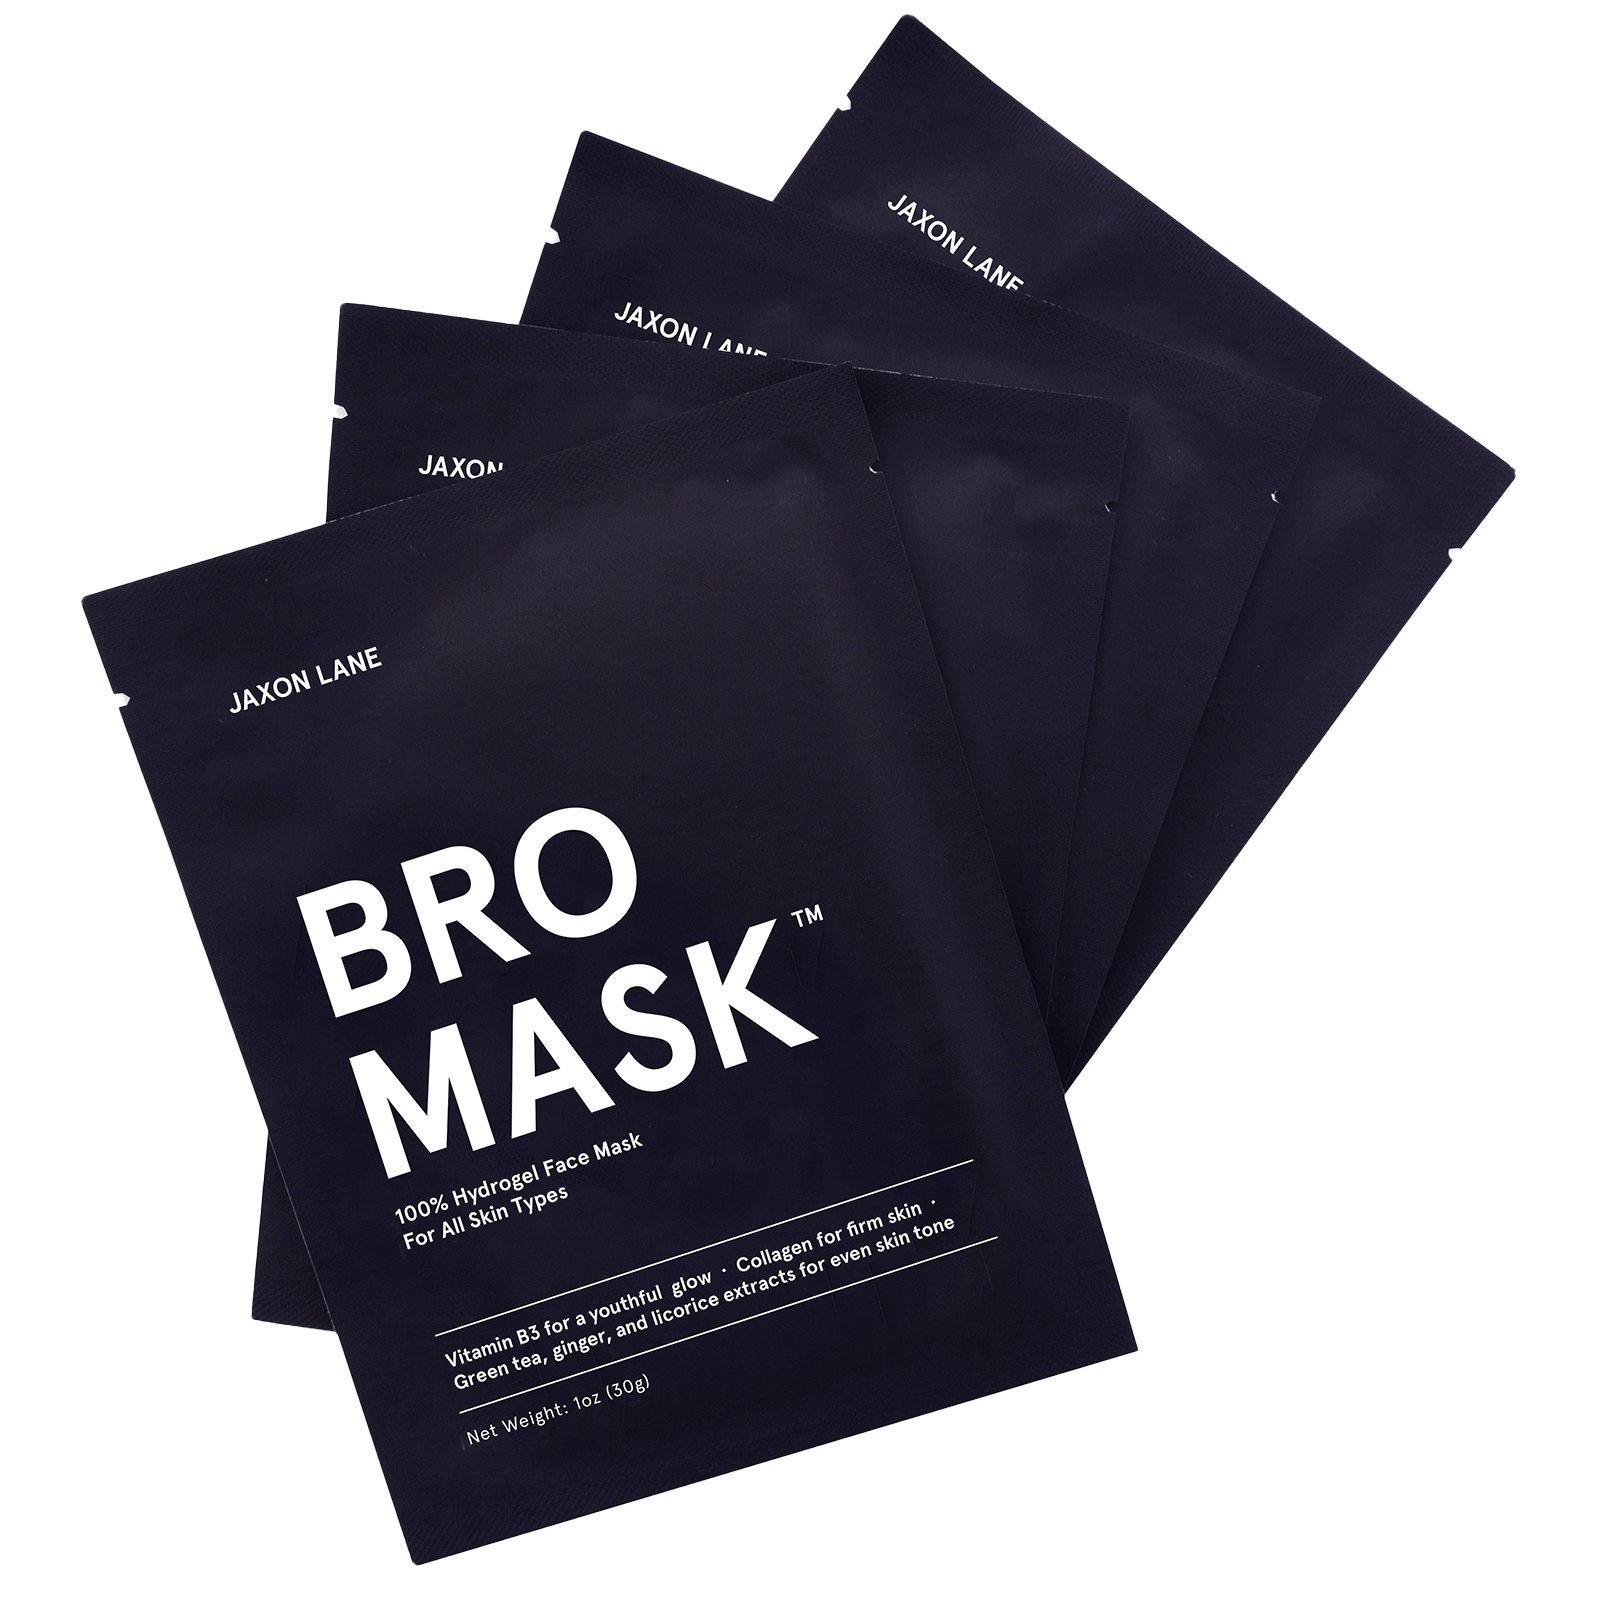 Bro Mask - 100% Hydrogel Sheet Masks